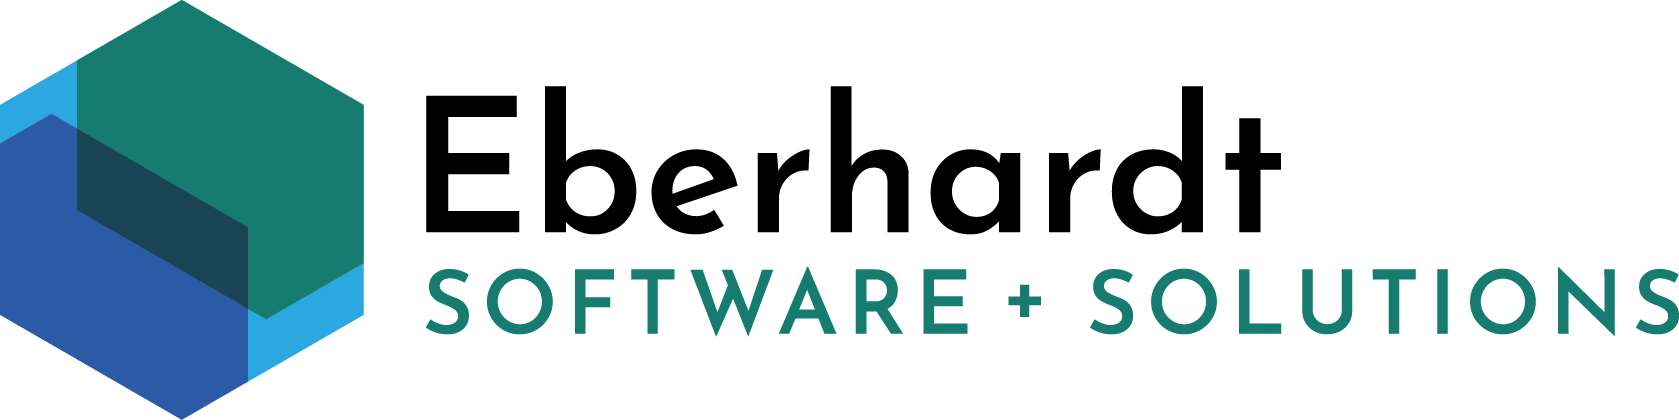 Eberhardt Software Solutions